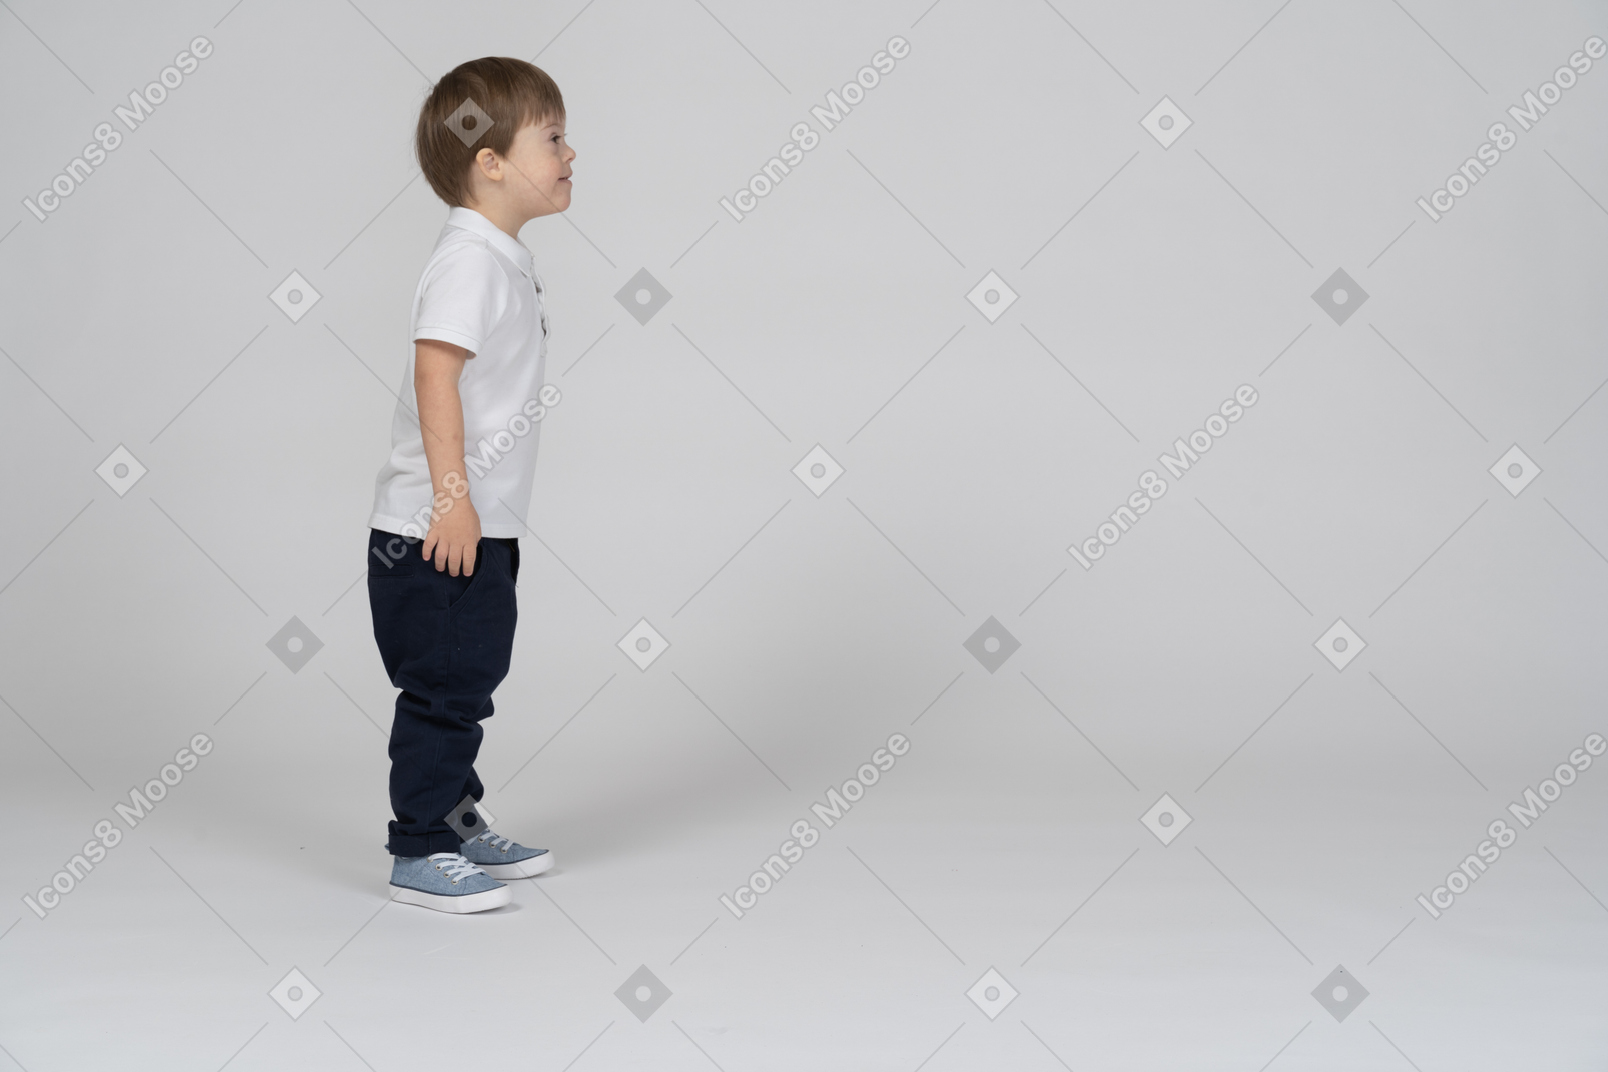 Вид сбоку маленького мальчика, стоящего на месте